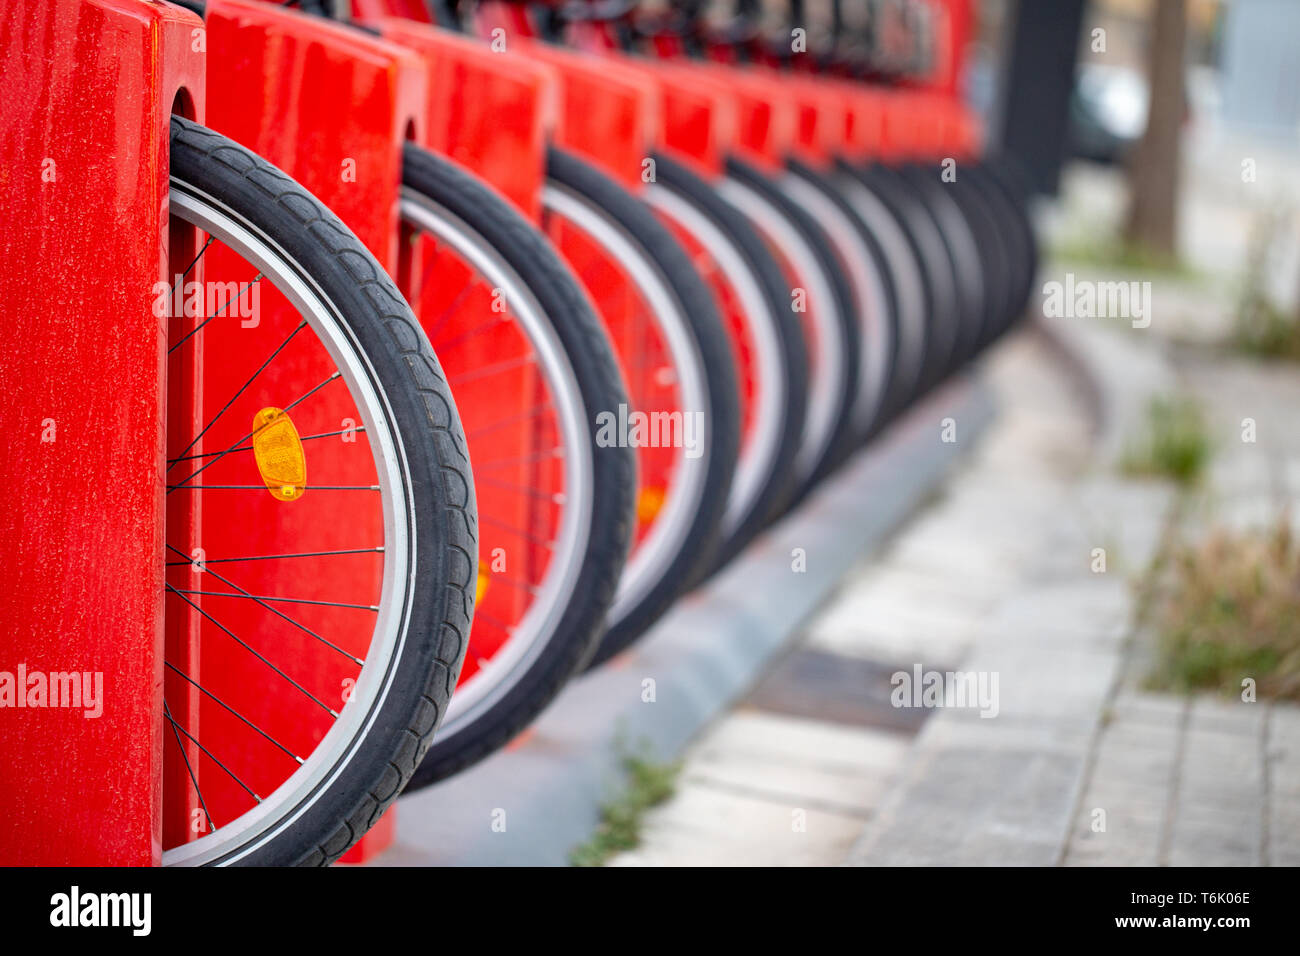 Muchas bicicletas en una fila. Rojo están en un estacionamiento de bicicletas para alquilar. Concepto de transporte respetuoso con el medio ambiente. Foto de stock